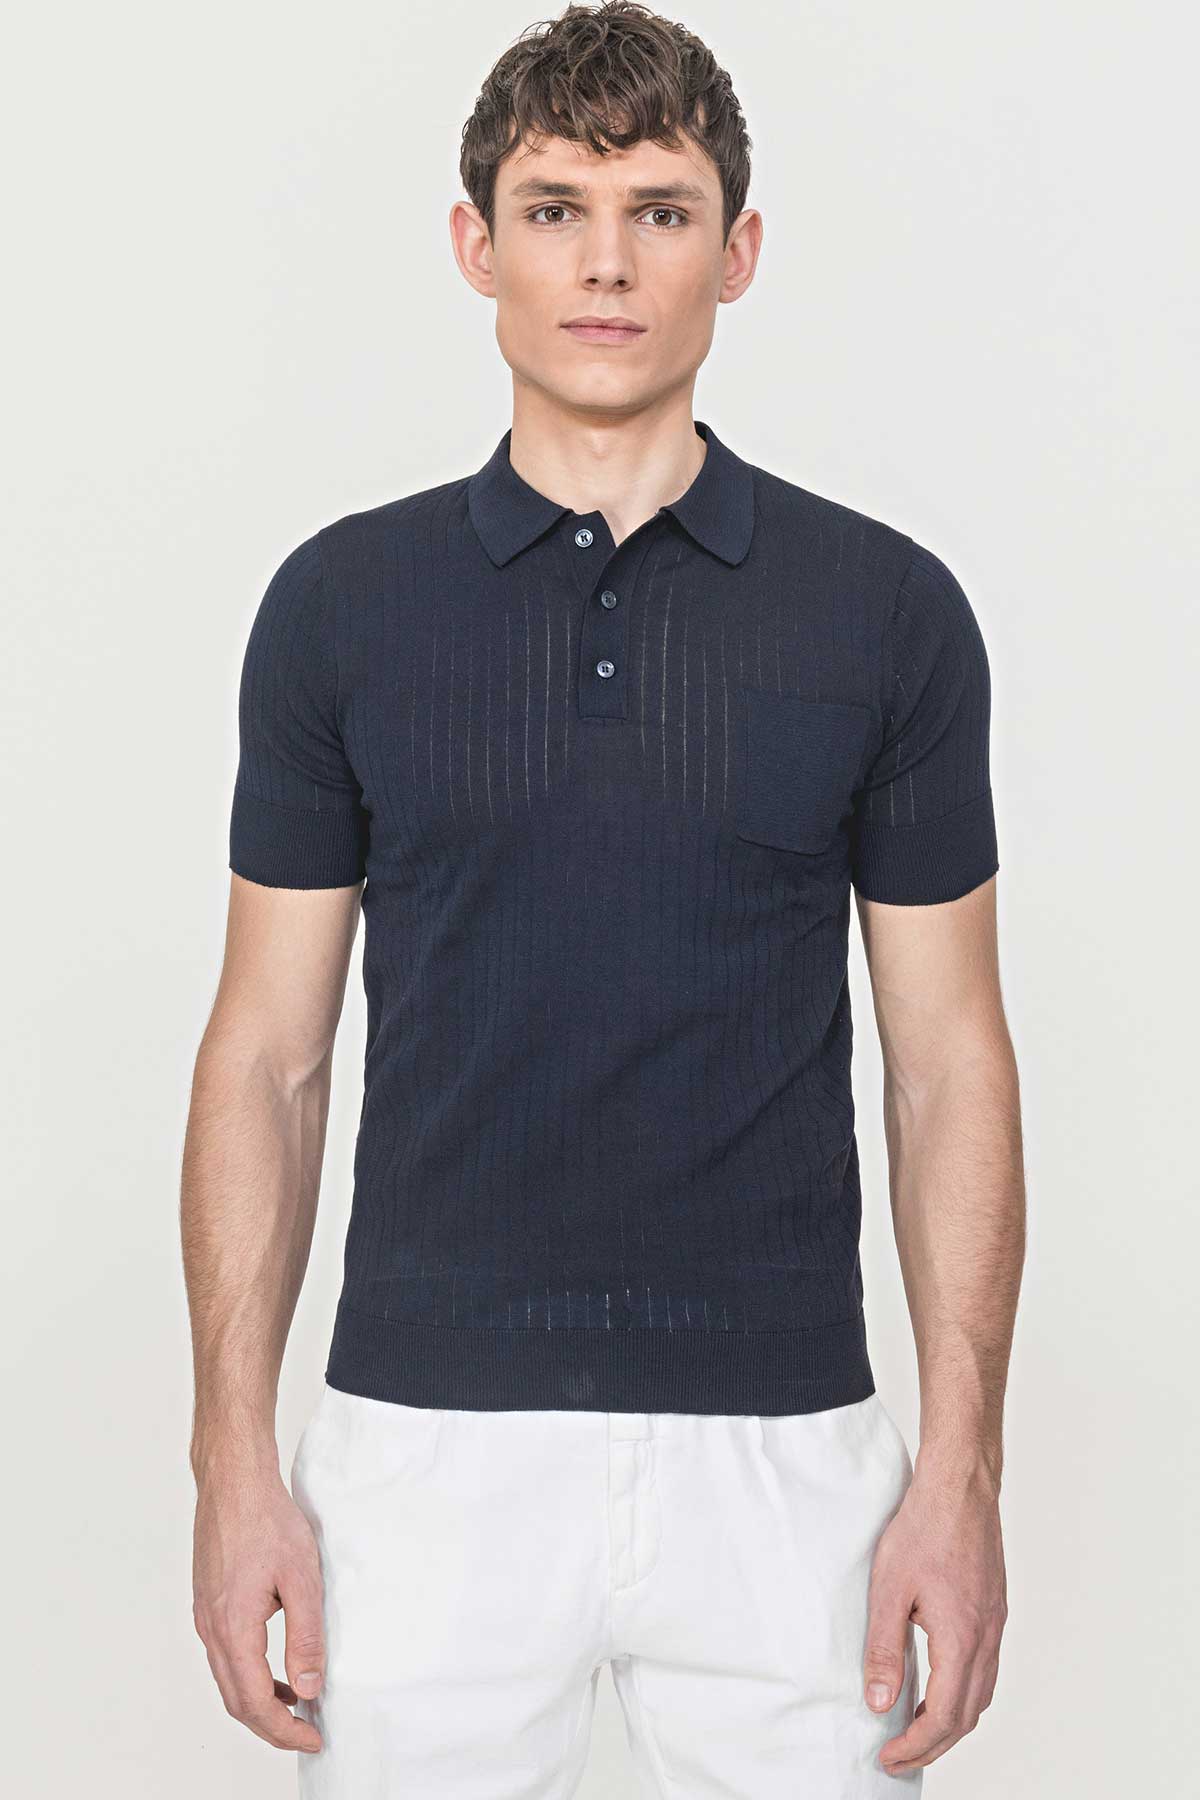 Antony Morato Polo Yaka T-shirt-Libas Trendy Fashion Store